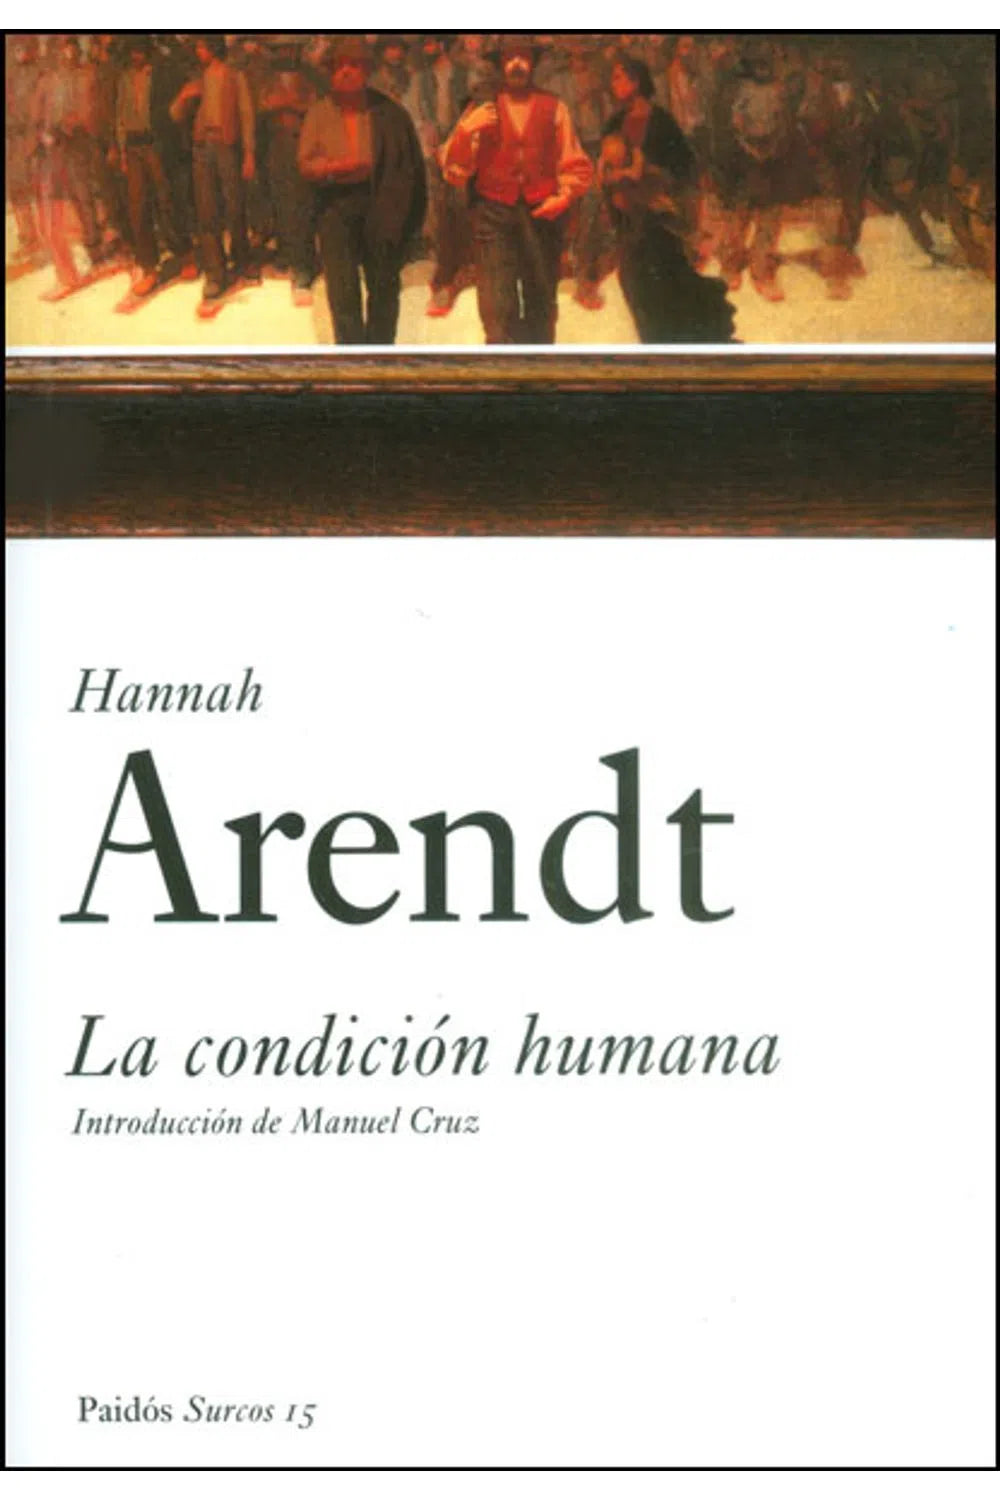 La condición humana - Hannah Arendt